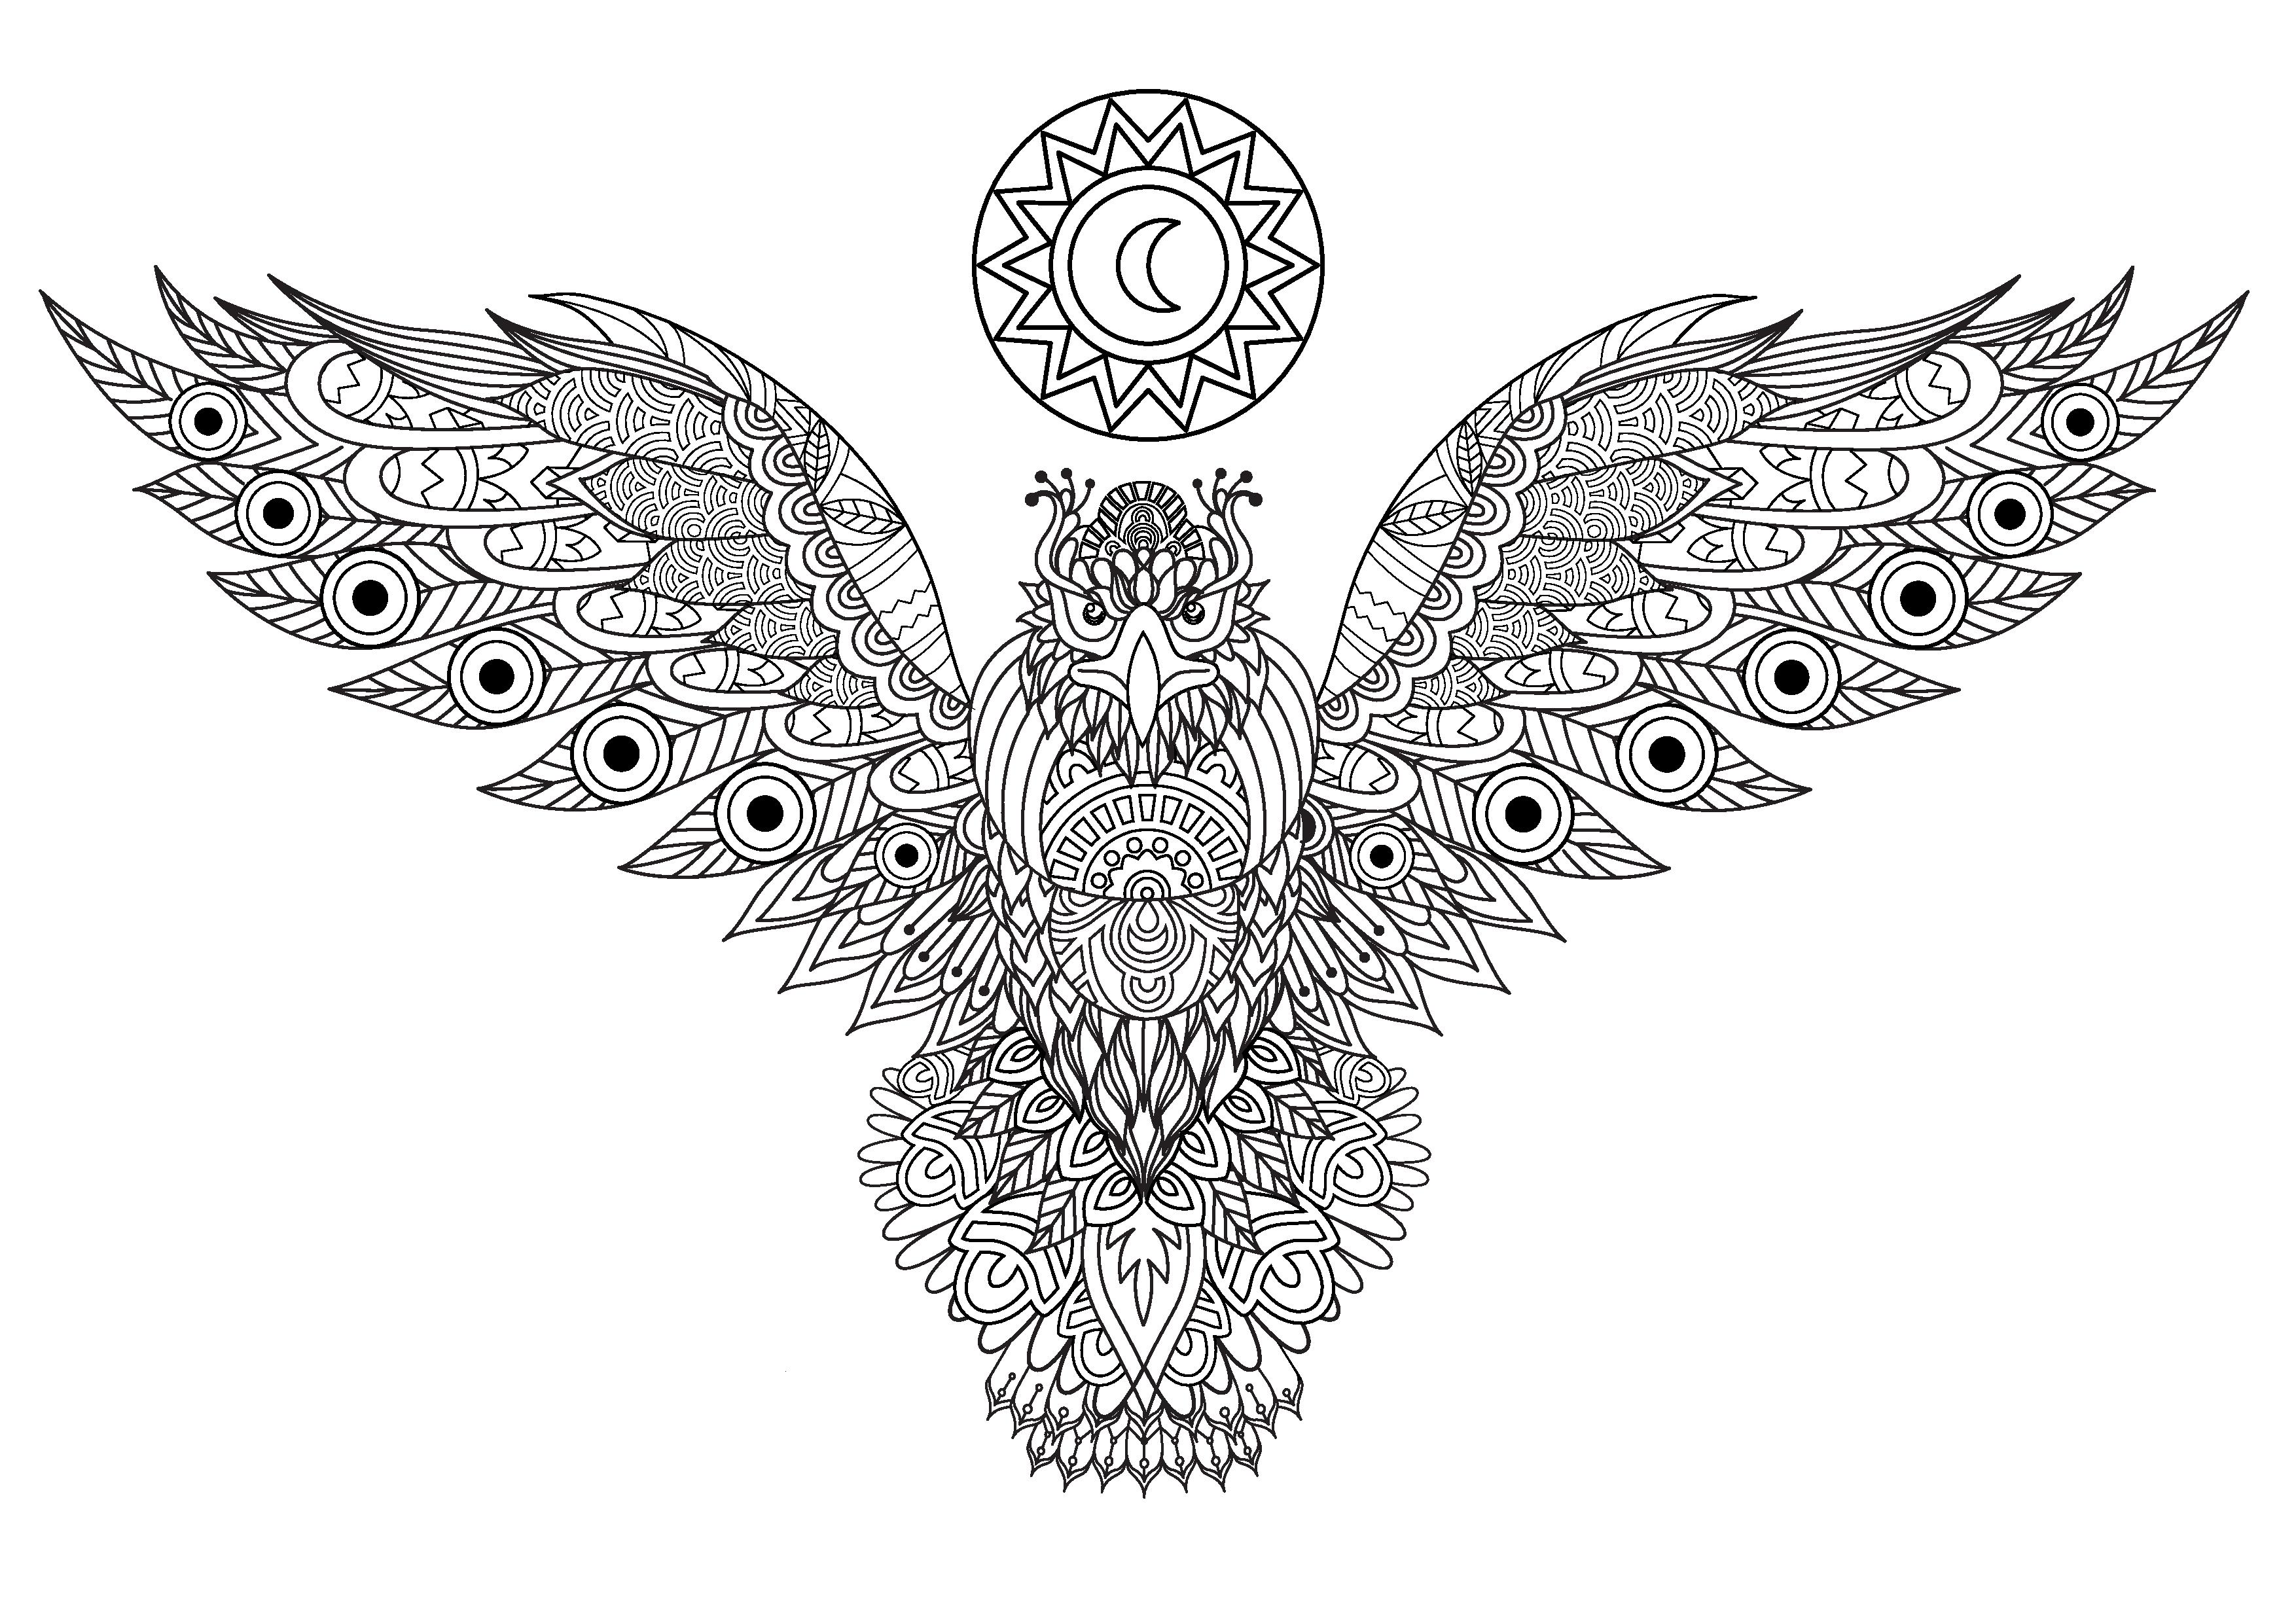 Majestätischer Adler, der seine Schwingen ausbreitet und viele verschiedene und verschlungene Motive aufweist